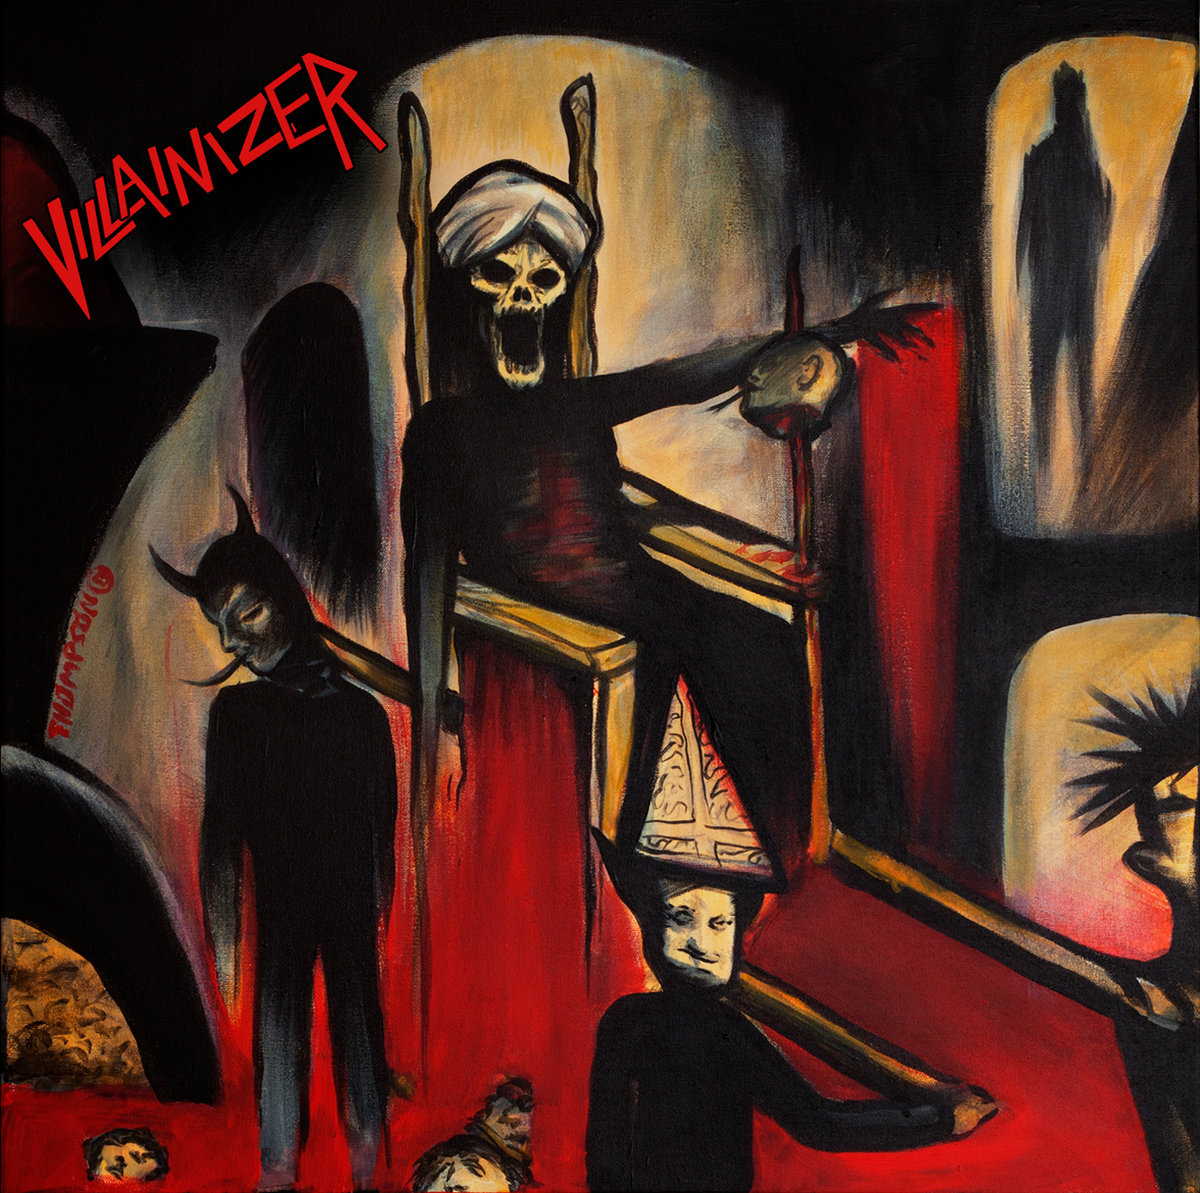 VILLAINIZER - Reign in Terror cover 